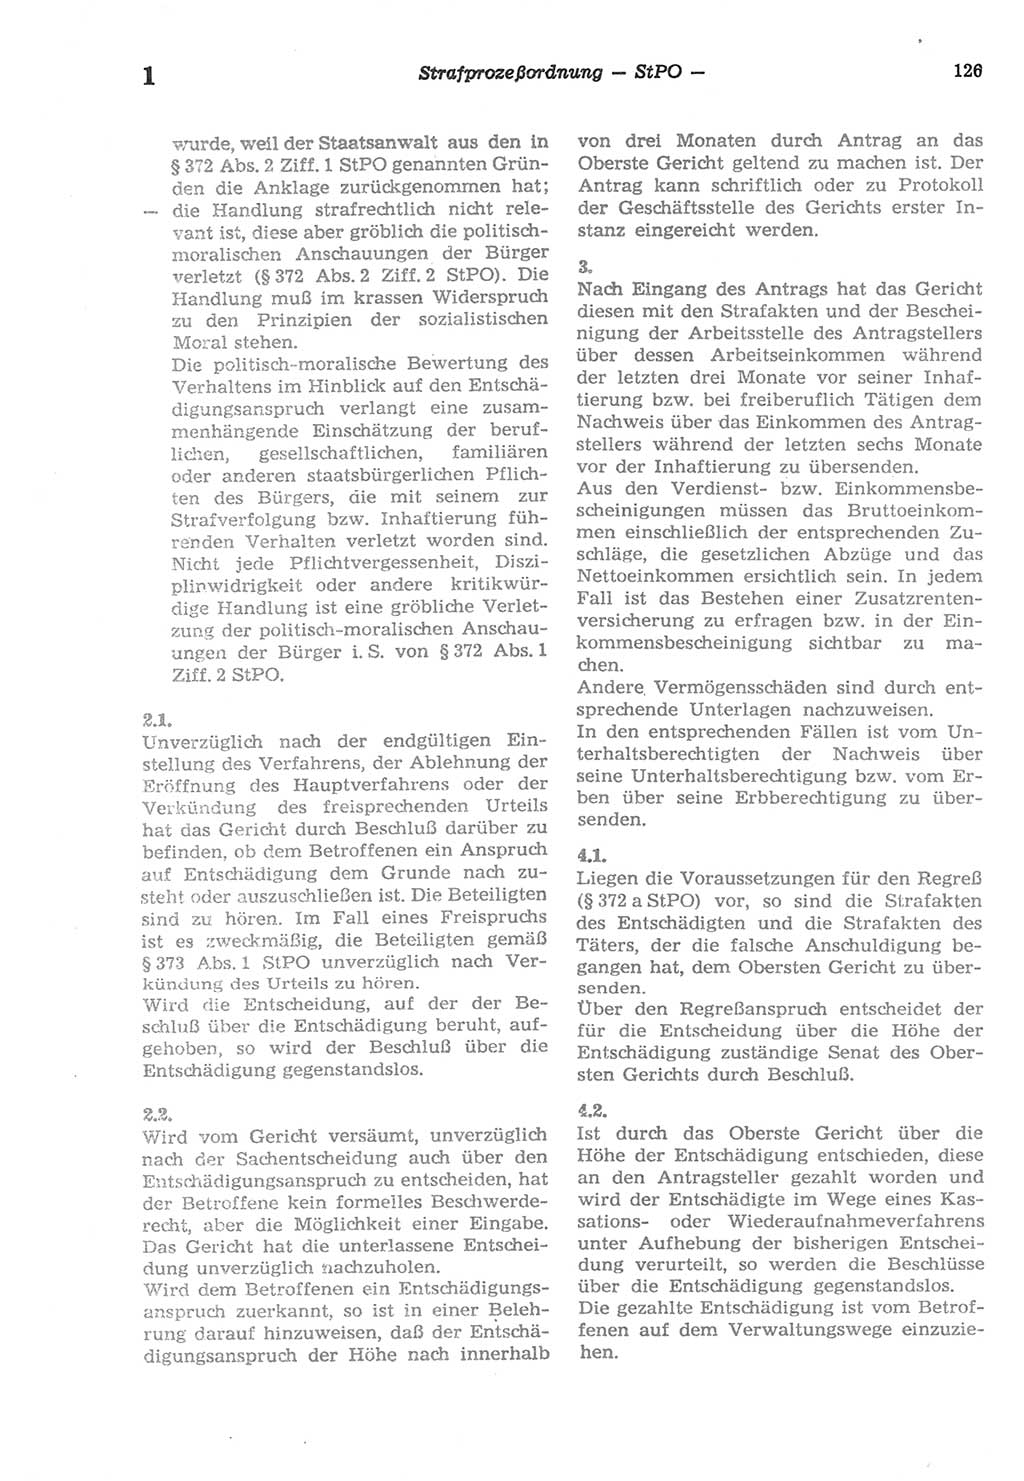 Strafprozeßordnung (StPO) der Deutschen Demokratischen Republik (DDR) sowie angrenzende Gesetze und Bestimmungen 1977, Seite 126 (StPO DDR Ges. Best. 1977, S. 126)